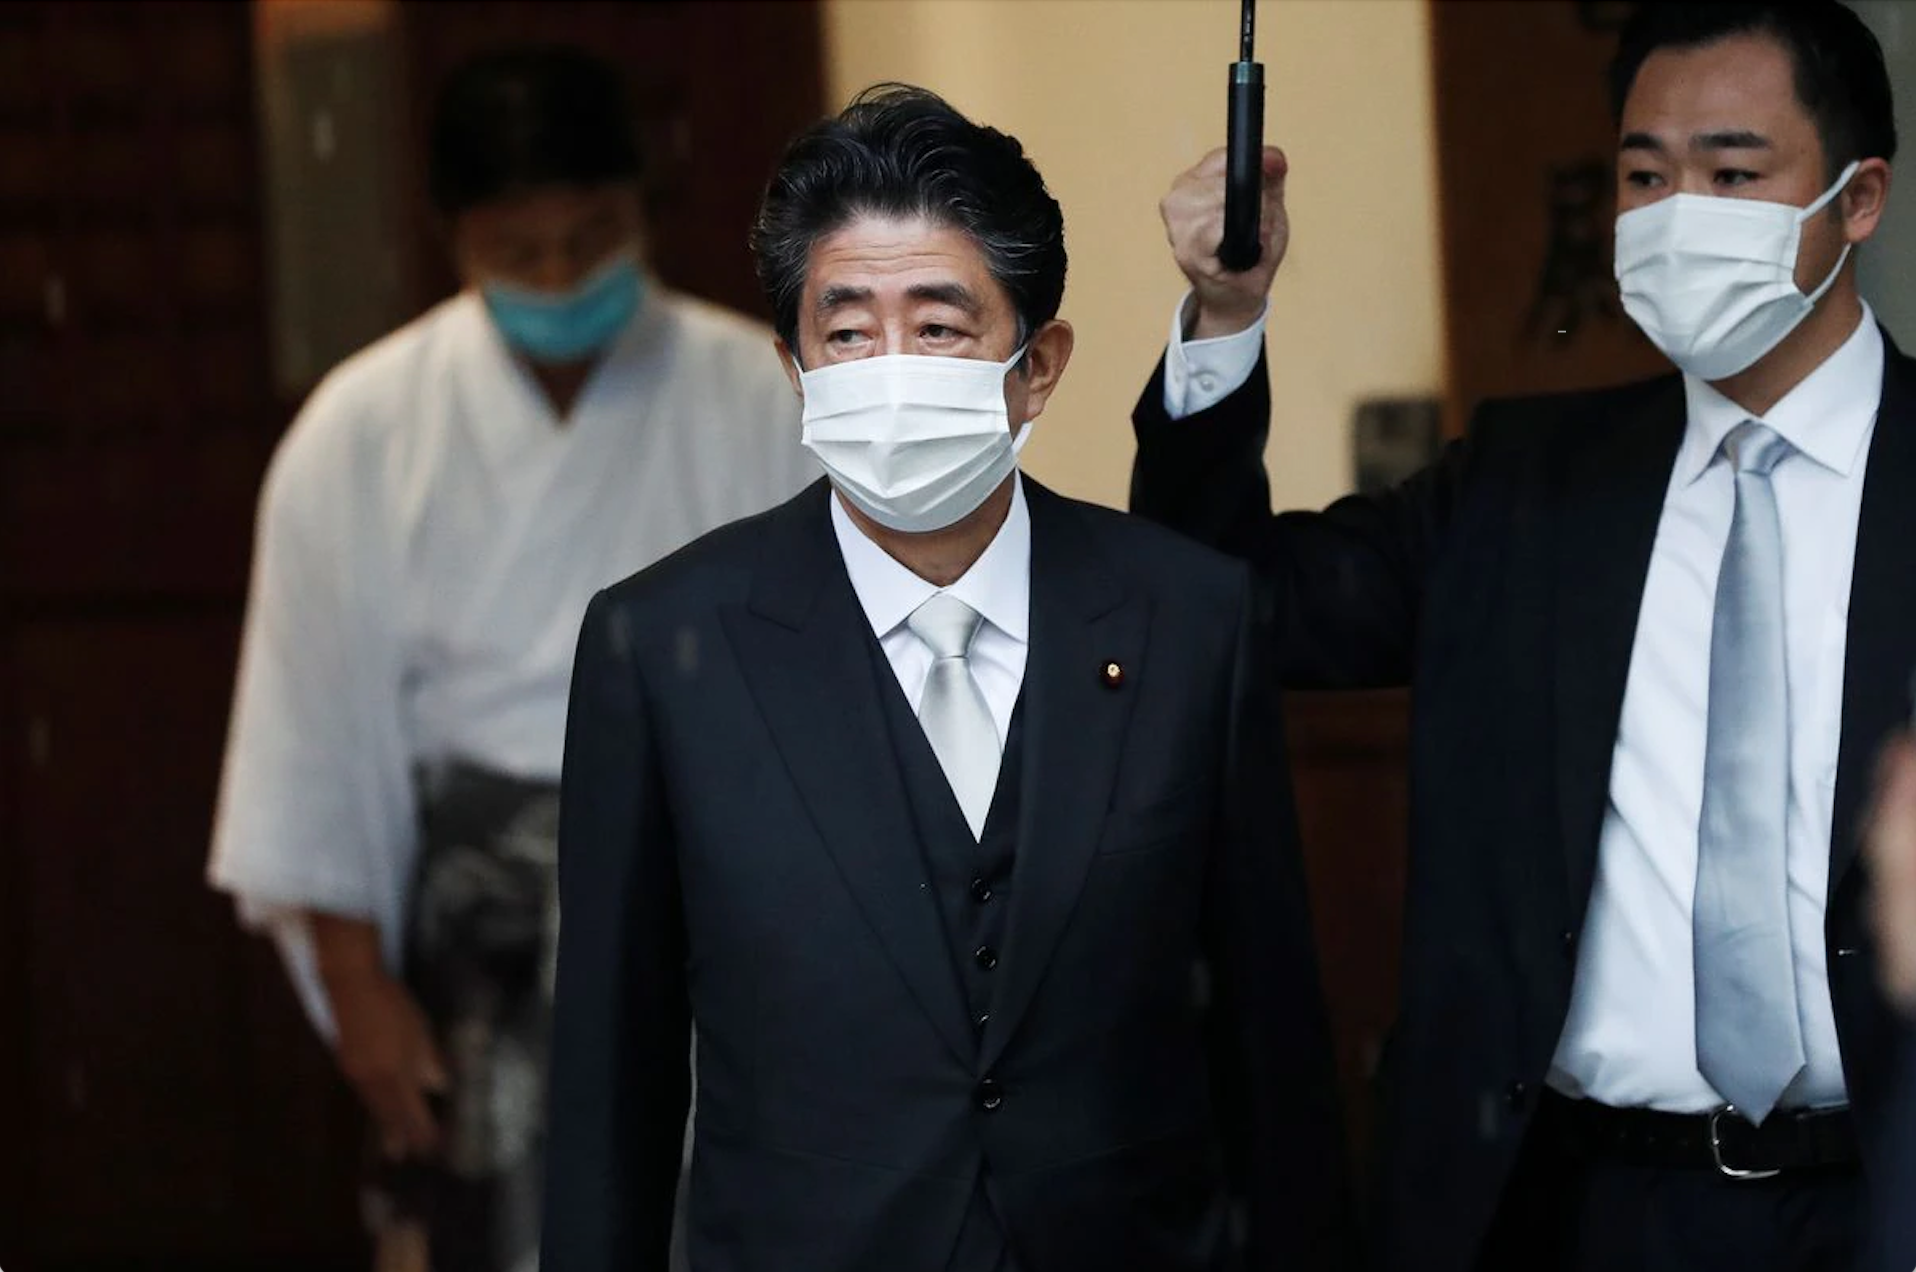 Lãnh đạo nhiều nước 'sốc' trước tin cựu Thủ tướng Nhật bị bắn